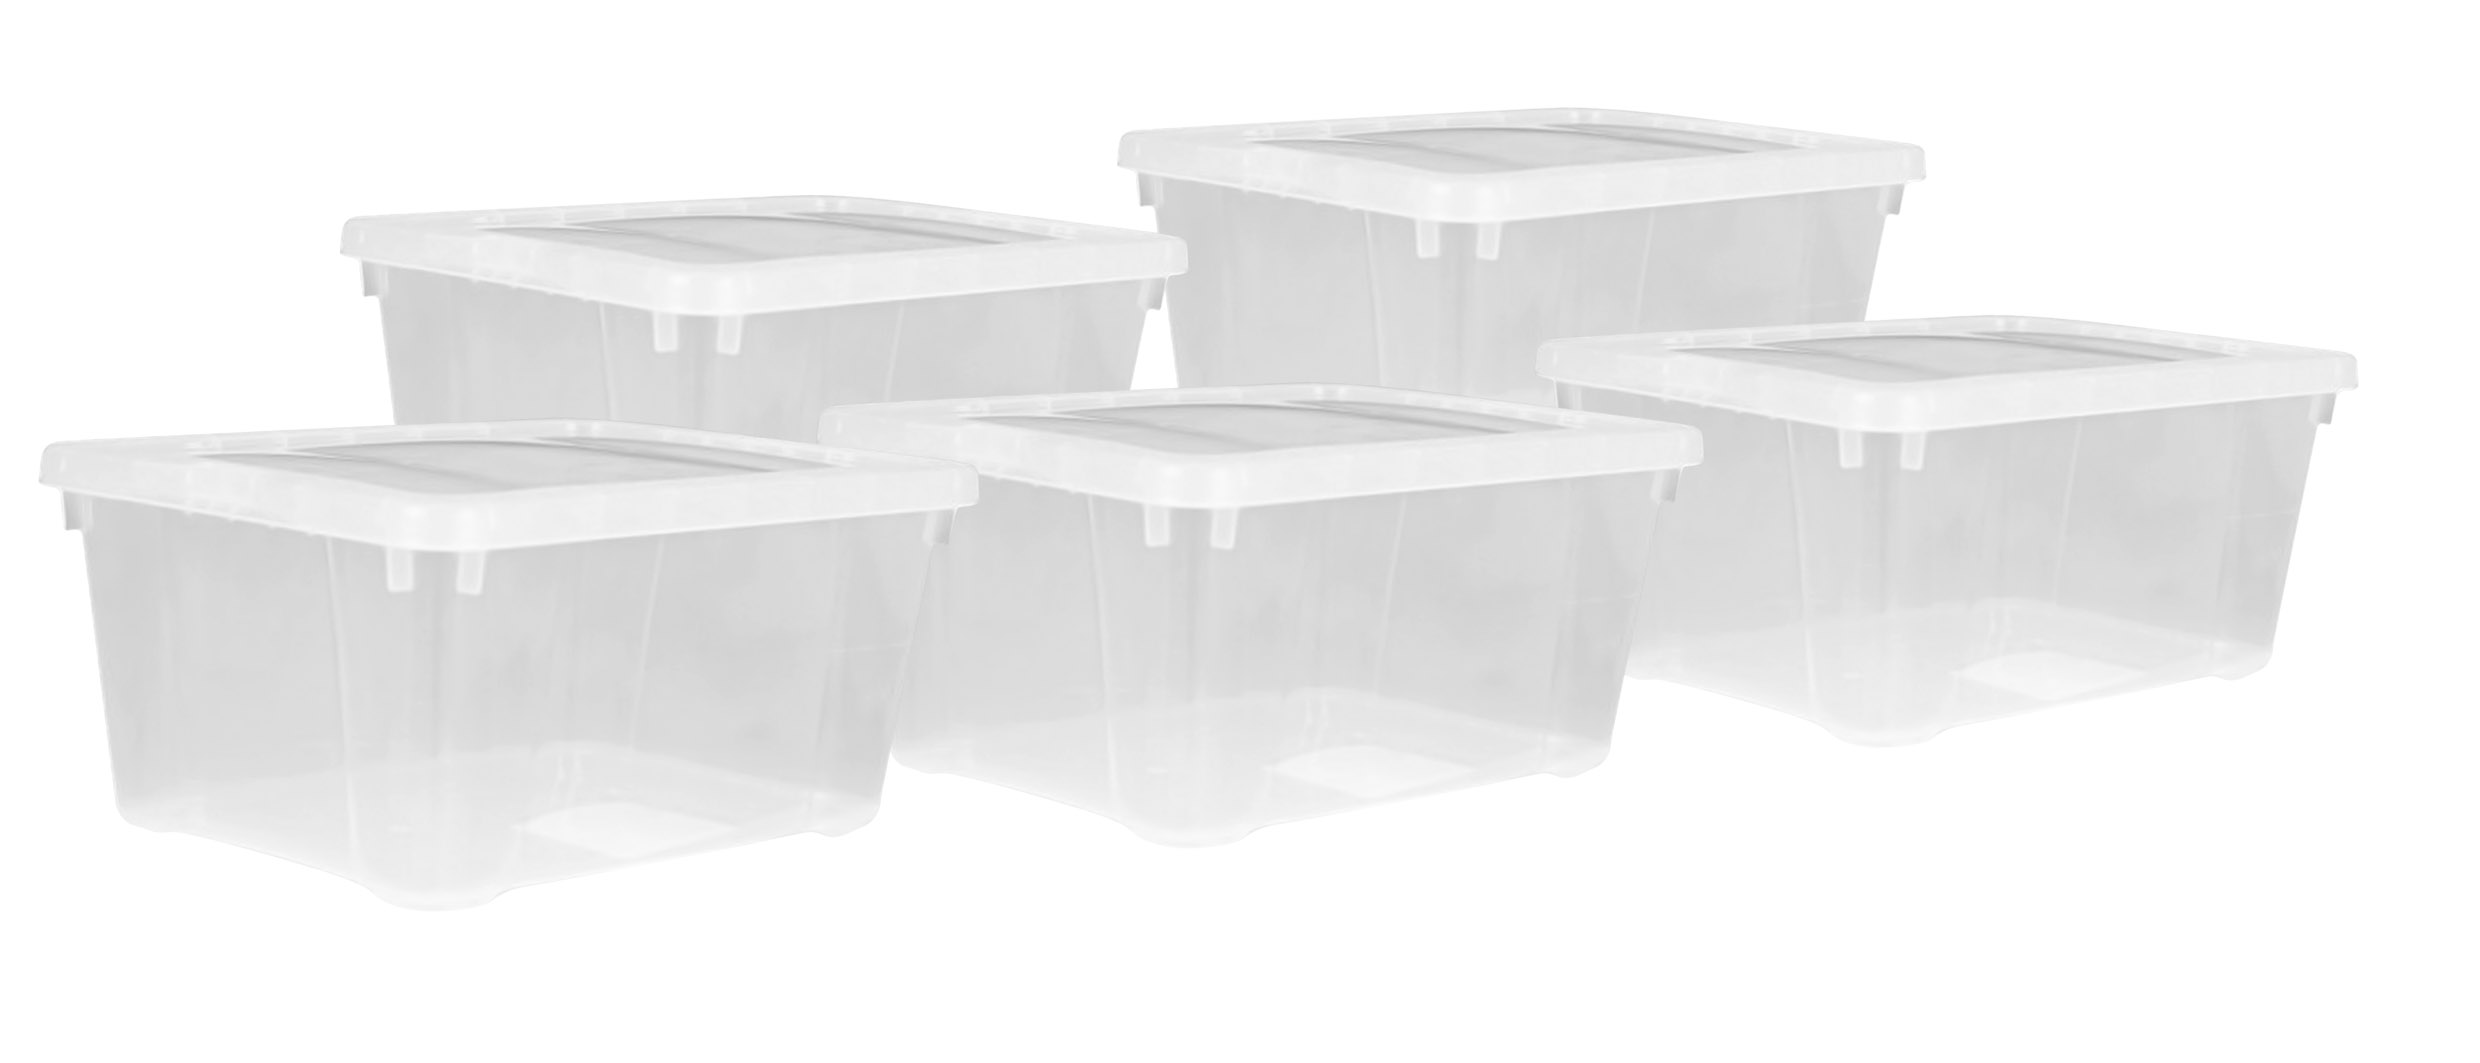 Kunststoff Aufbewahrungsbox transparent 4,5 Liter - 5er Set - Klarsicht Universal Box 33 x 20 cm